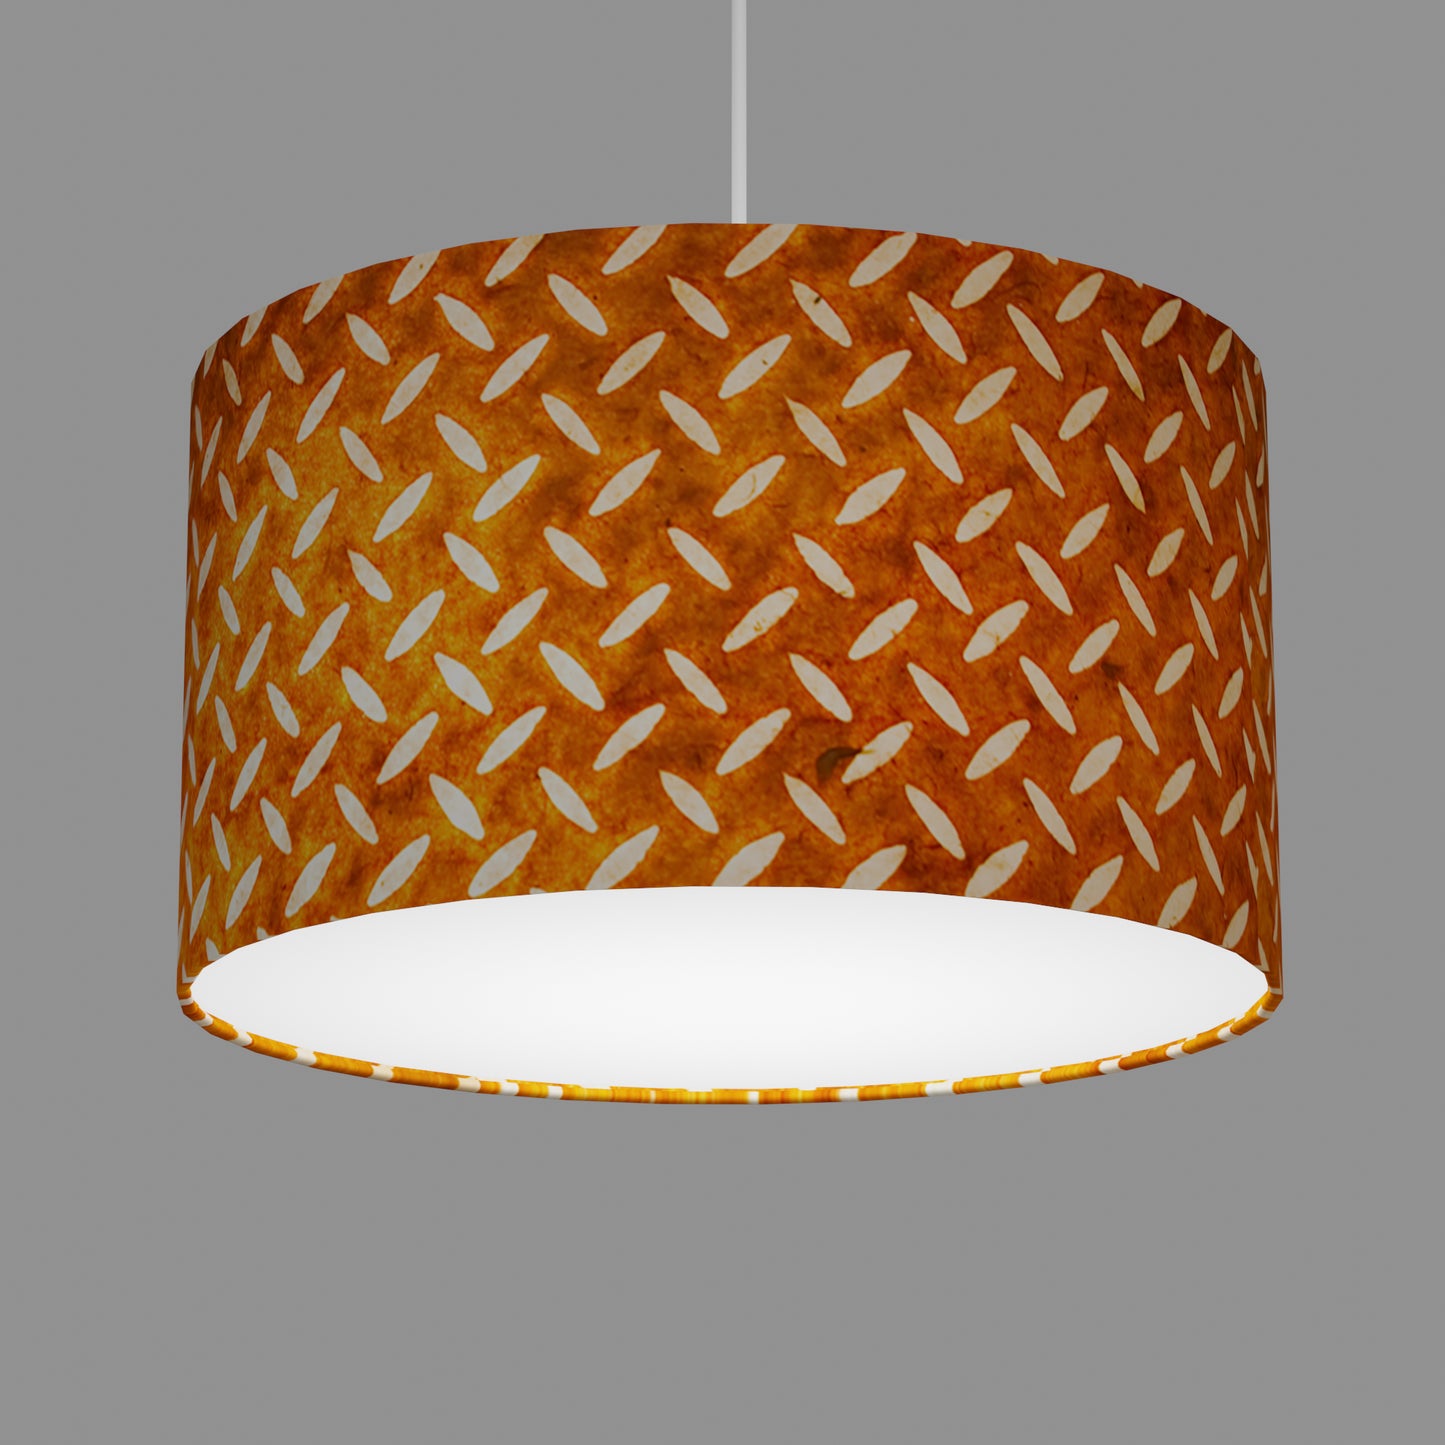 Drum Lamp Shade - P12 - Batik Tread Plate Brown, 35cm(d) x 20cm(h)